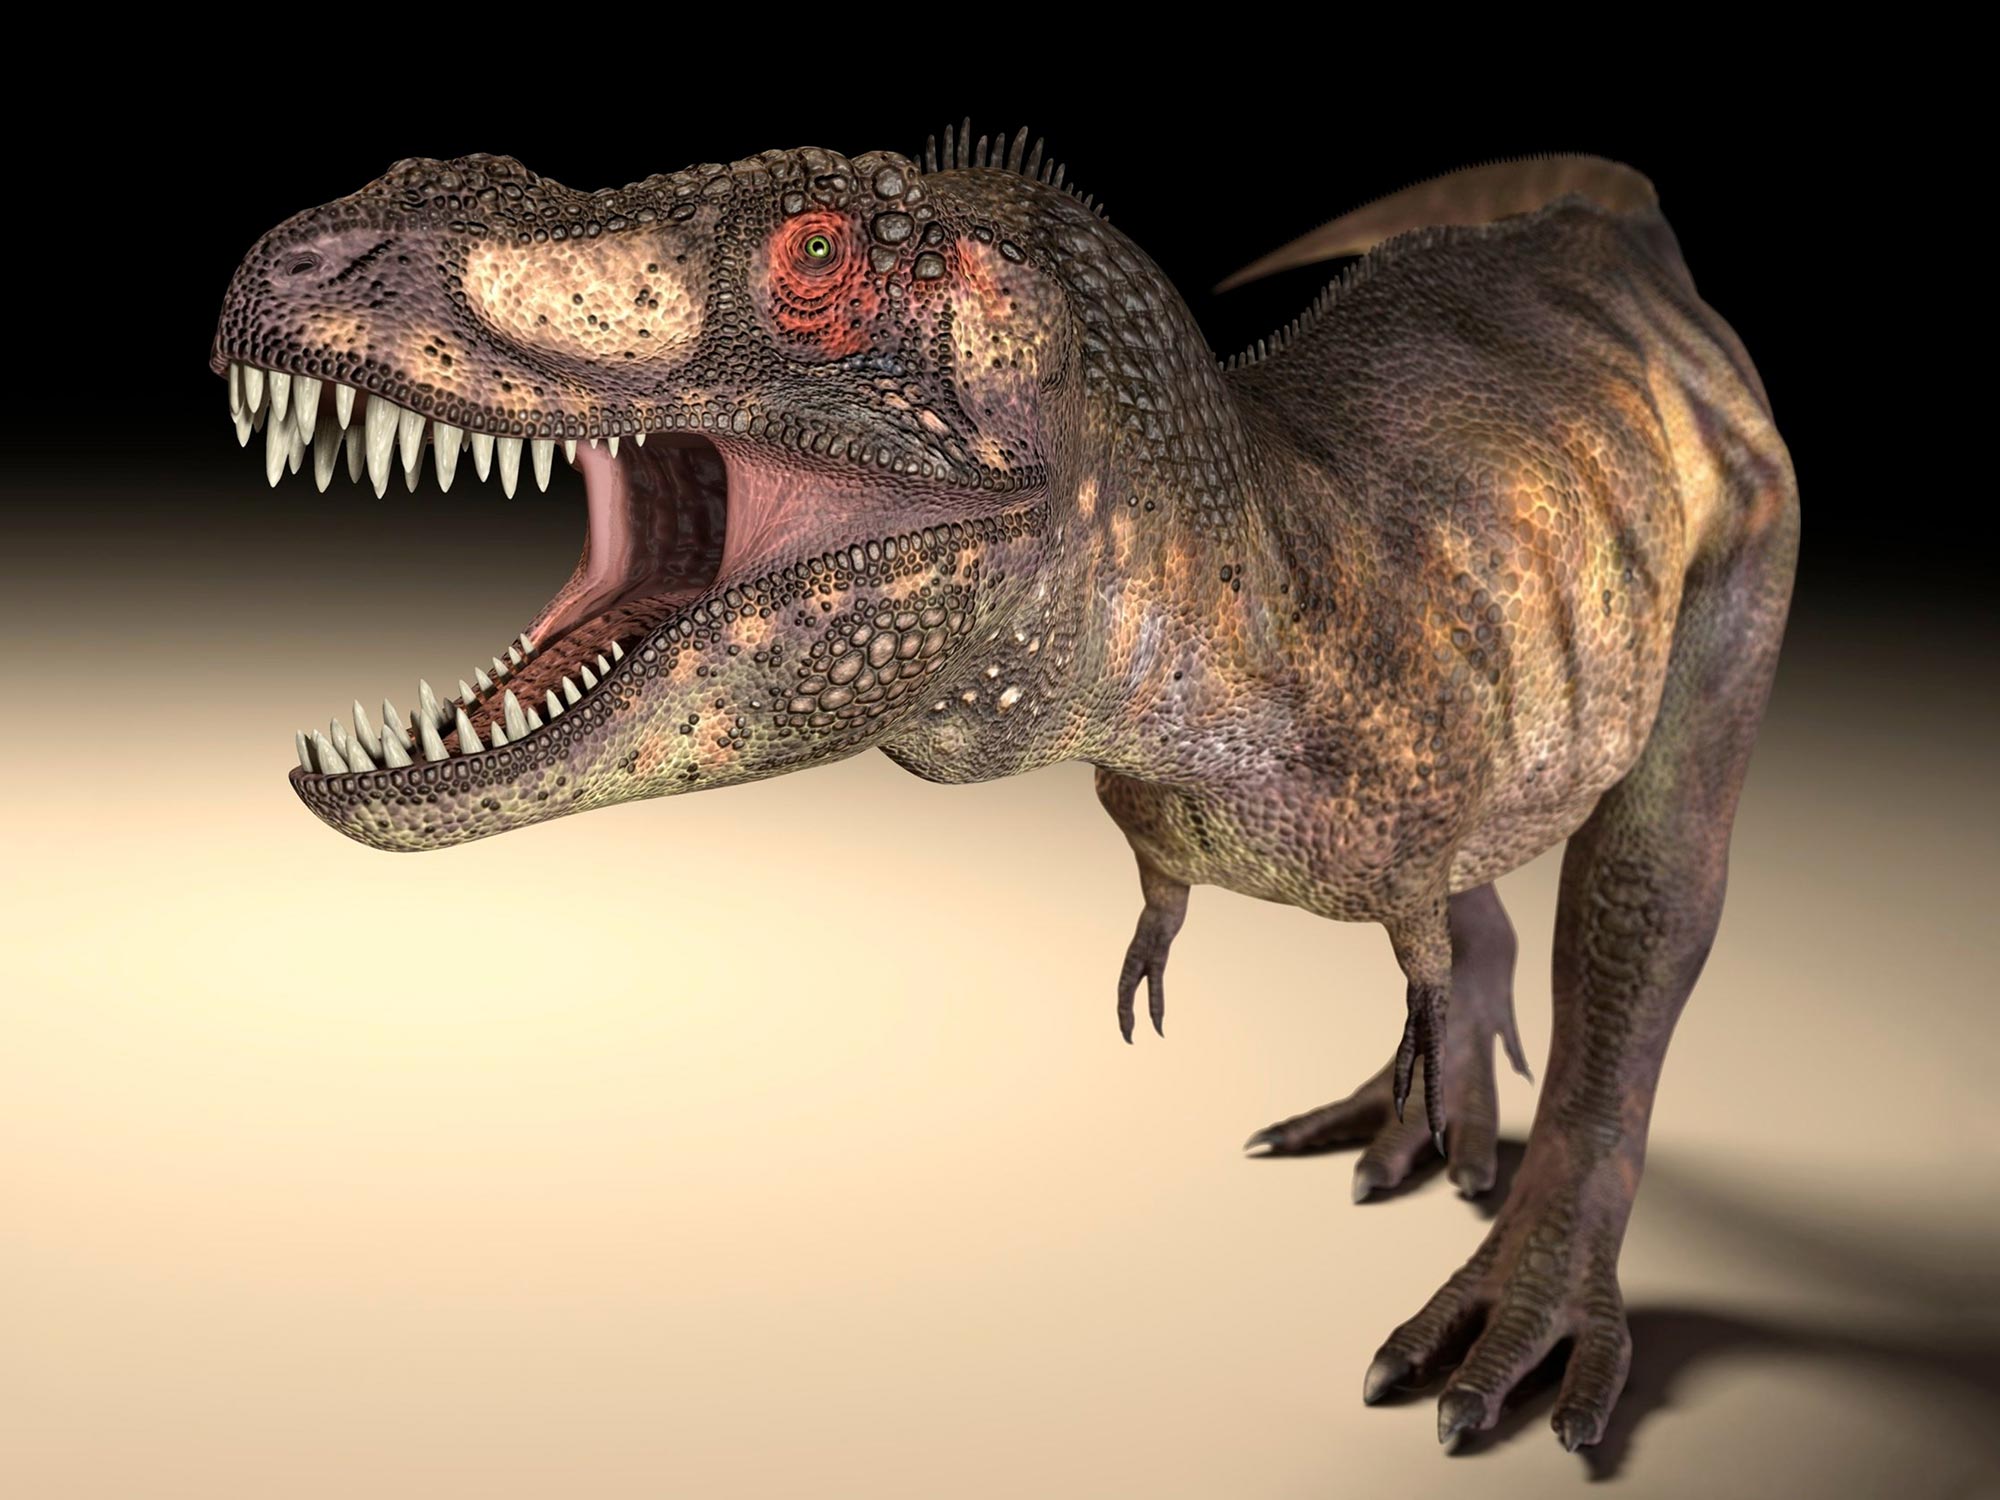 Les grands dinosaures prédateurs, tels que le T. rex, ont développé différentes formes d’orbites oculaires pour permettre des morsures plus fortes.